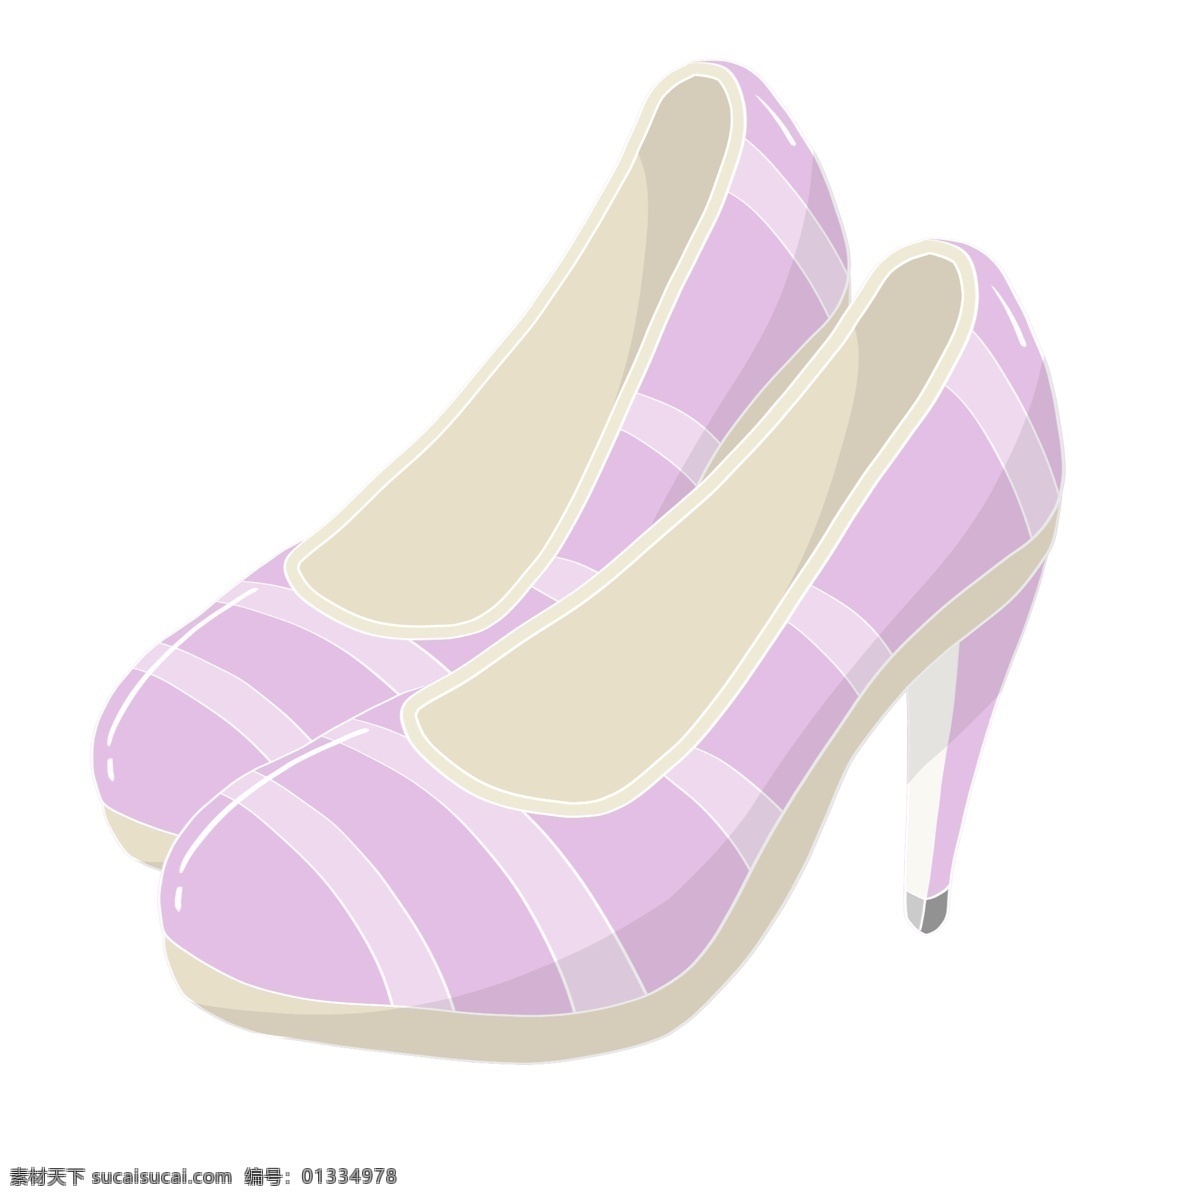 紫色 女性 高跟鞋 插画 紫色的高跟鞋 女性高跟鞋 漂亮的高跟鞋 条纹高跟鞋 气质高跟鞋 高跟鞋插画